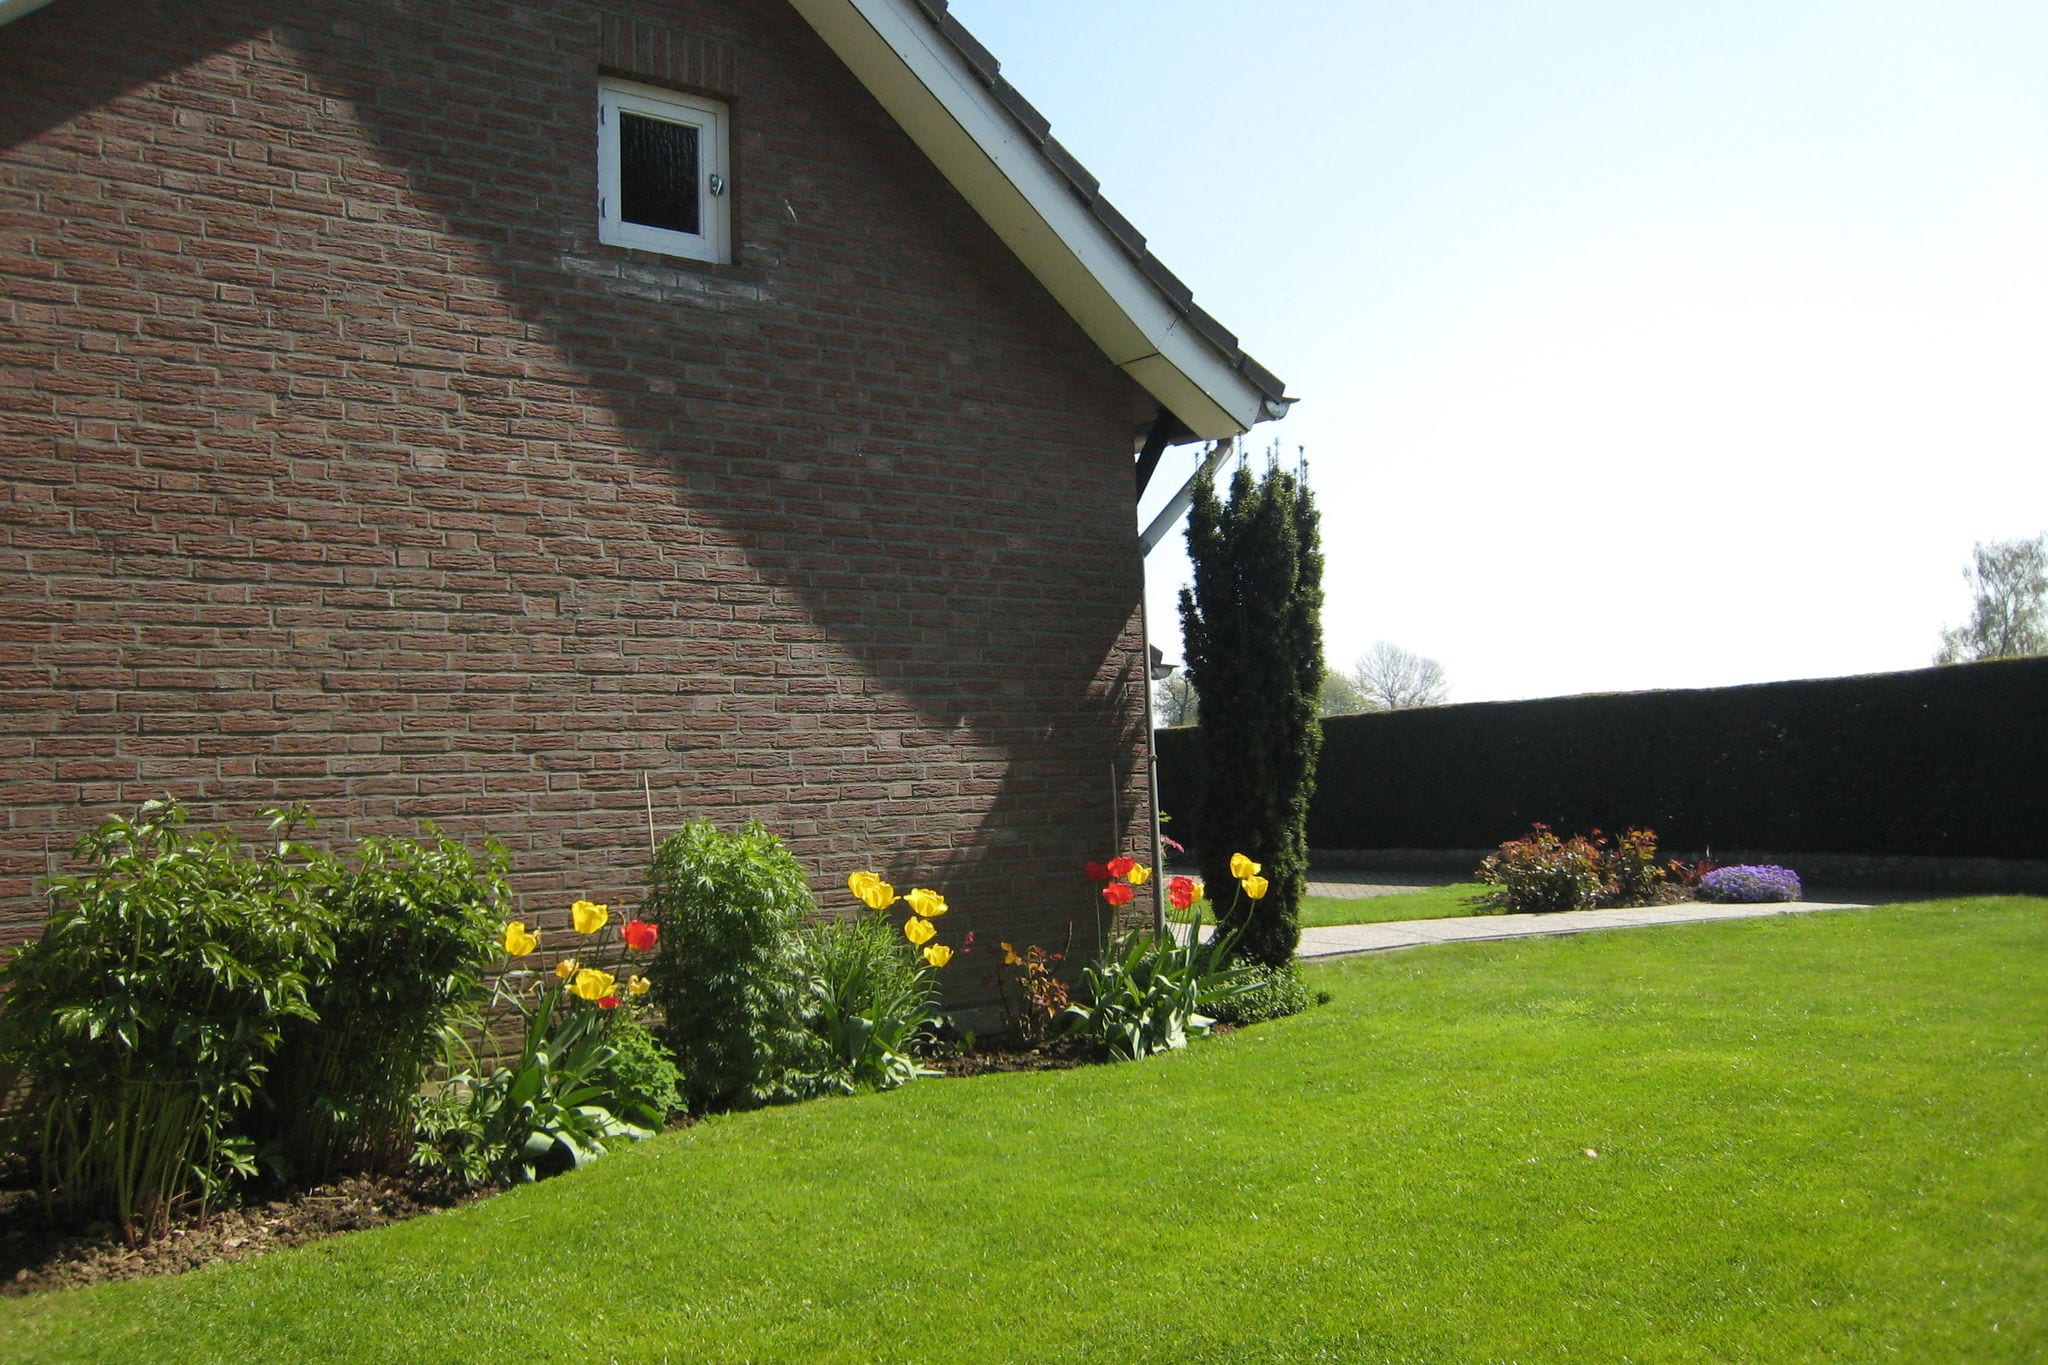 Maison de vacances avec sièges jardin à Margraten Limburg